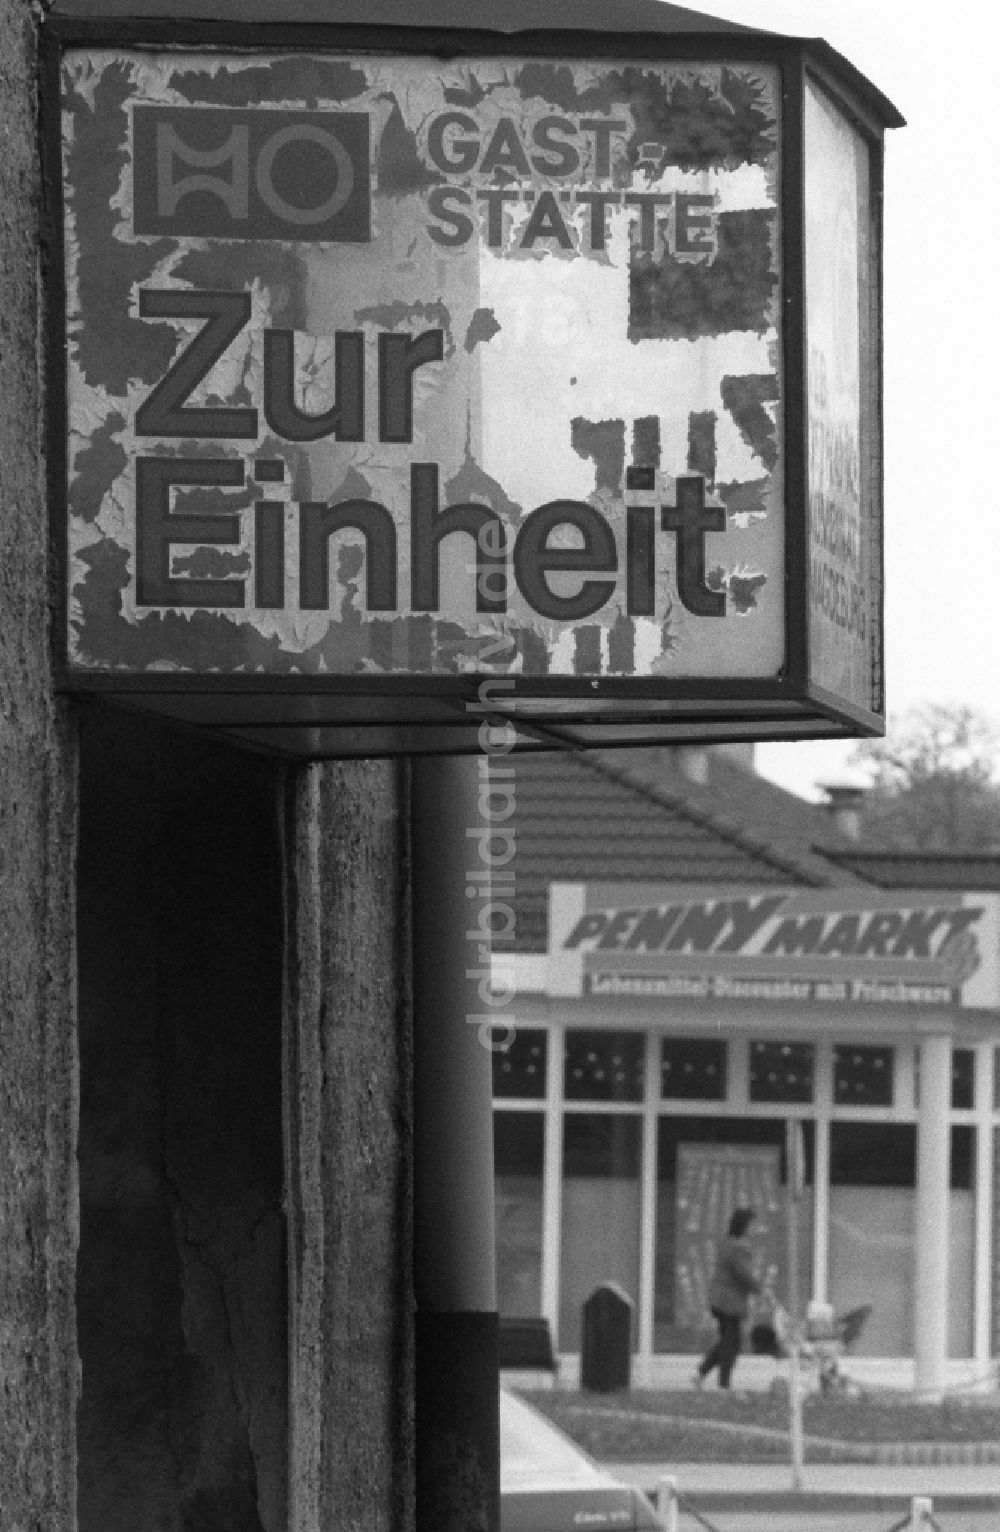 Staßfurt: Werbeschild einer ehemaligen HO-Gaststätte Zur Einheit in Staßfurt in Sachsen-Anhalt in der DDR